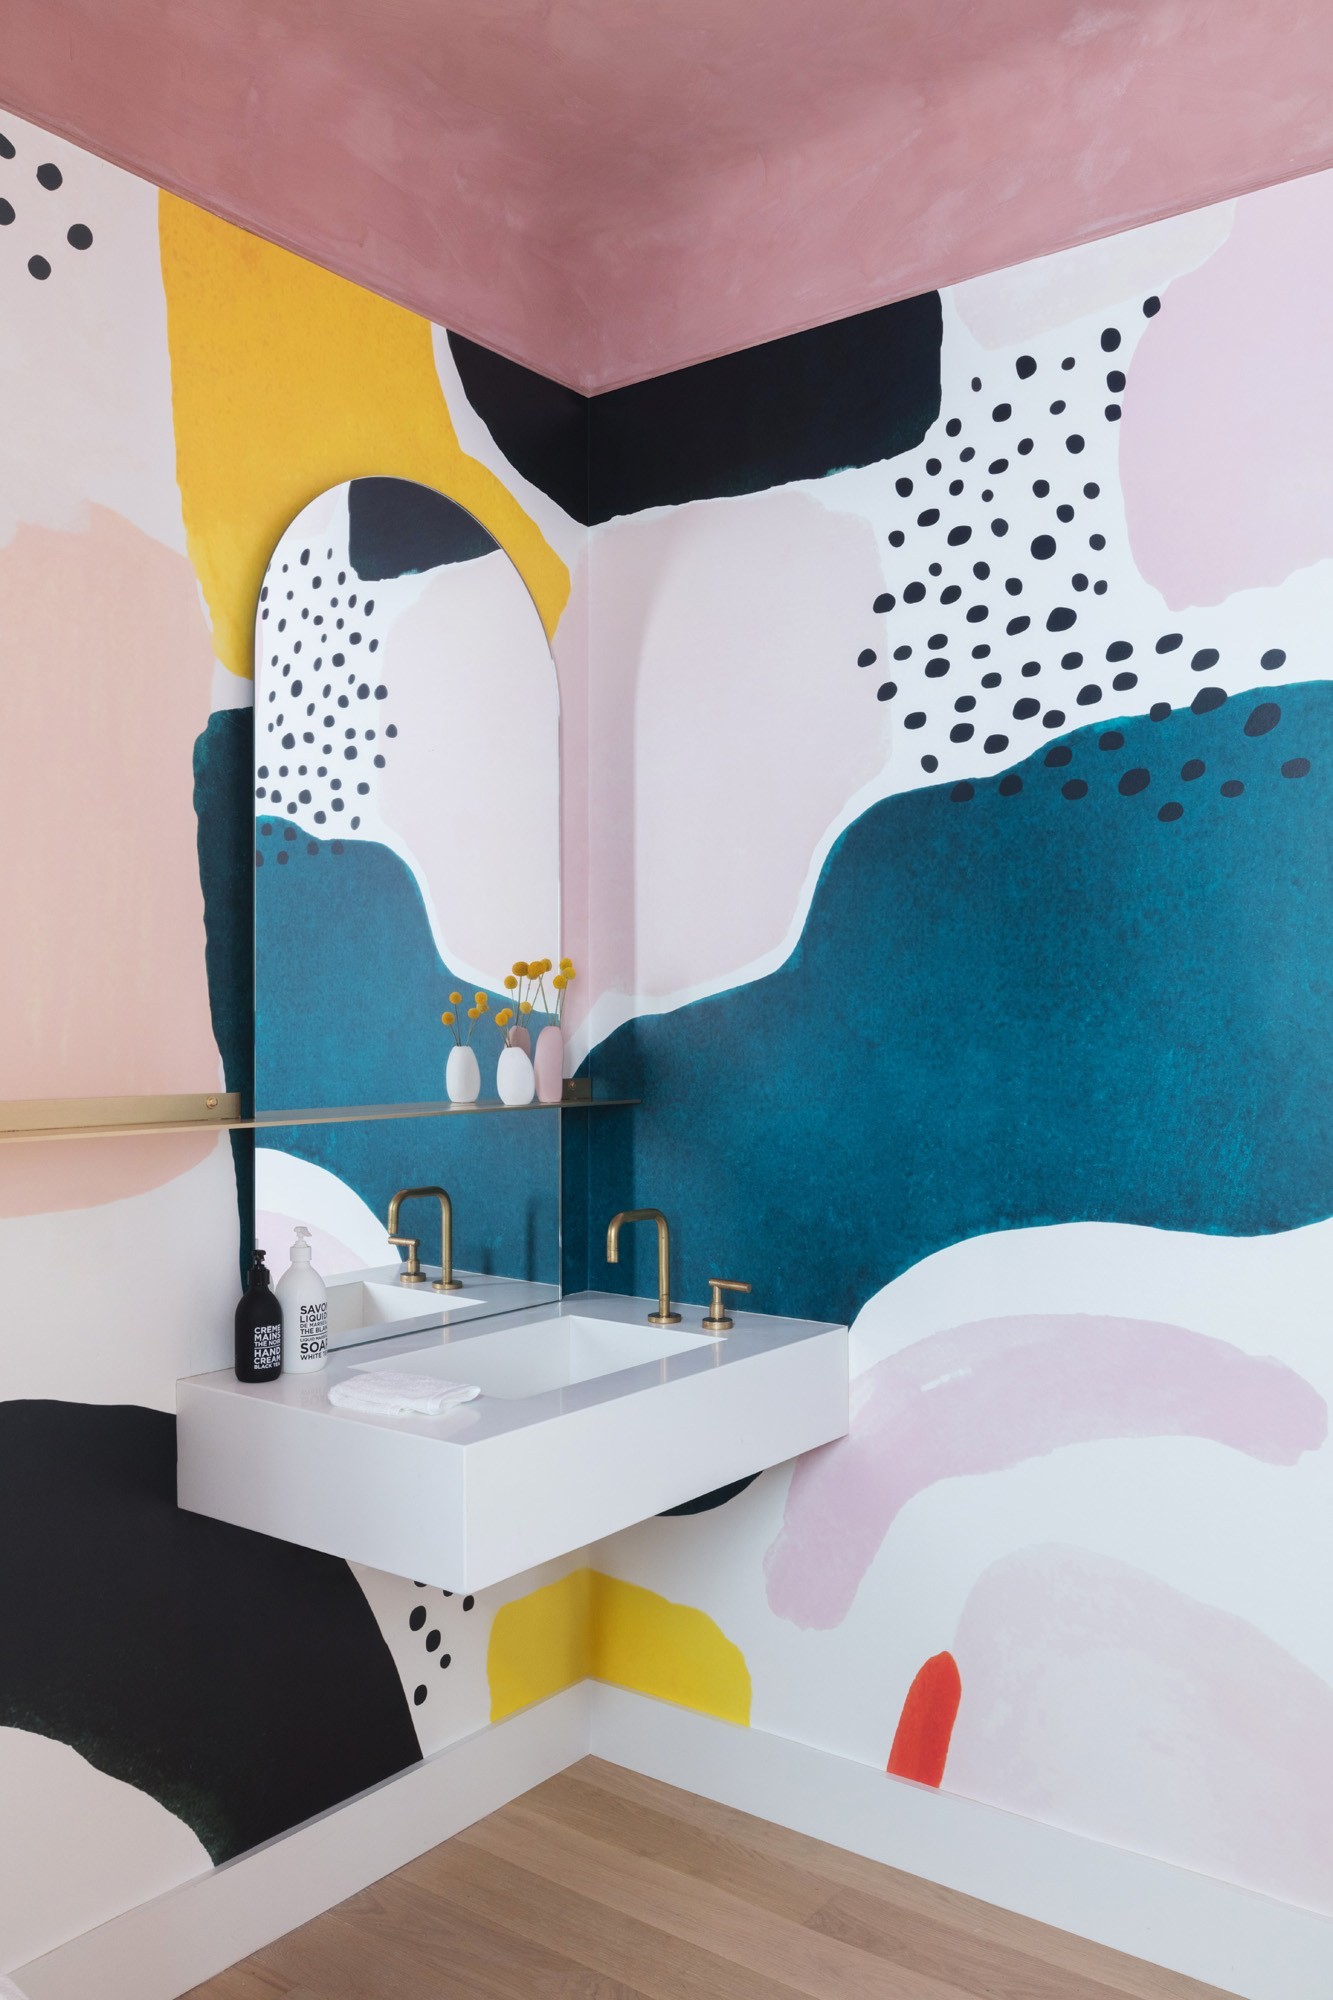 Décor do dia: lavabo colorido com pintura feita à mão (Foto: Divulgação)